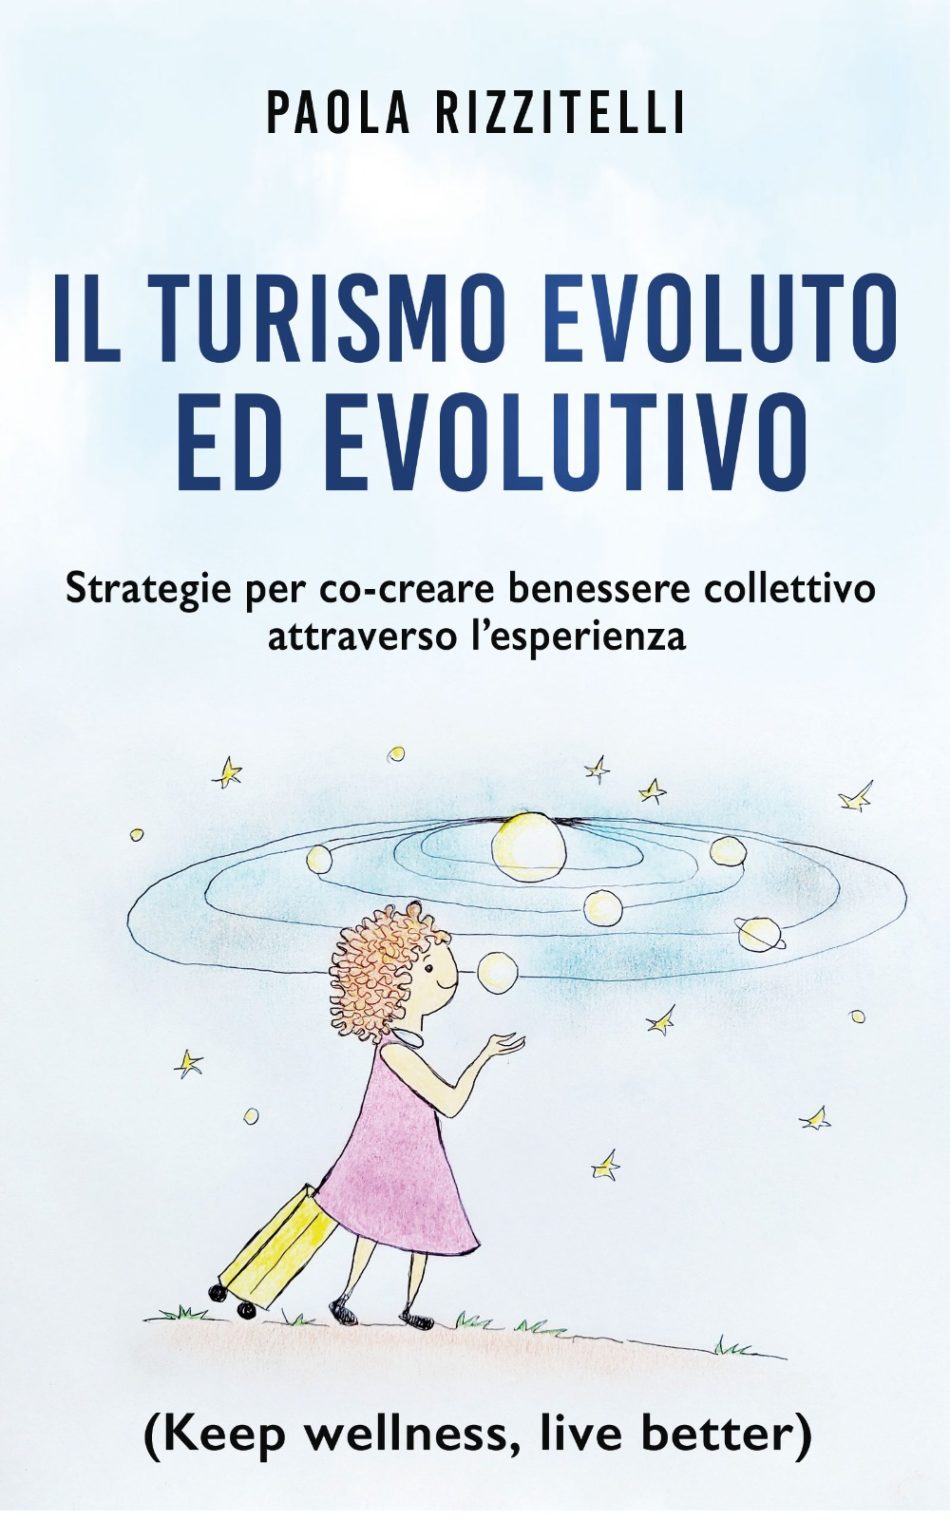 Presentazione del libro “Il turismo evoluto ed evolutivo” di Paola Rizzitelli